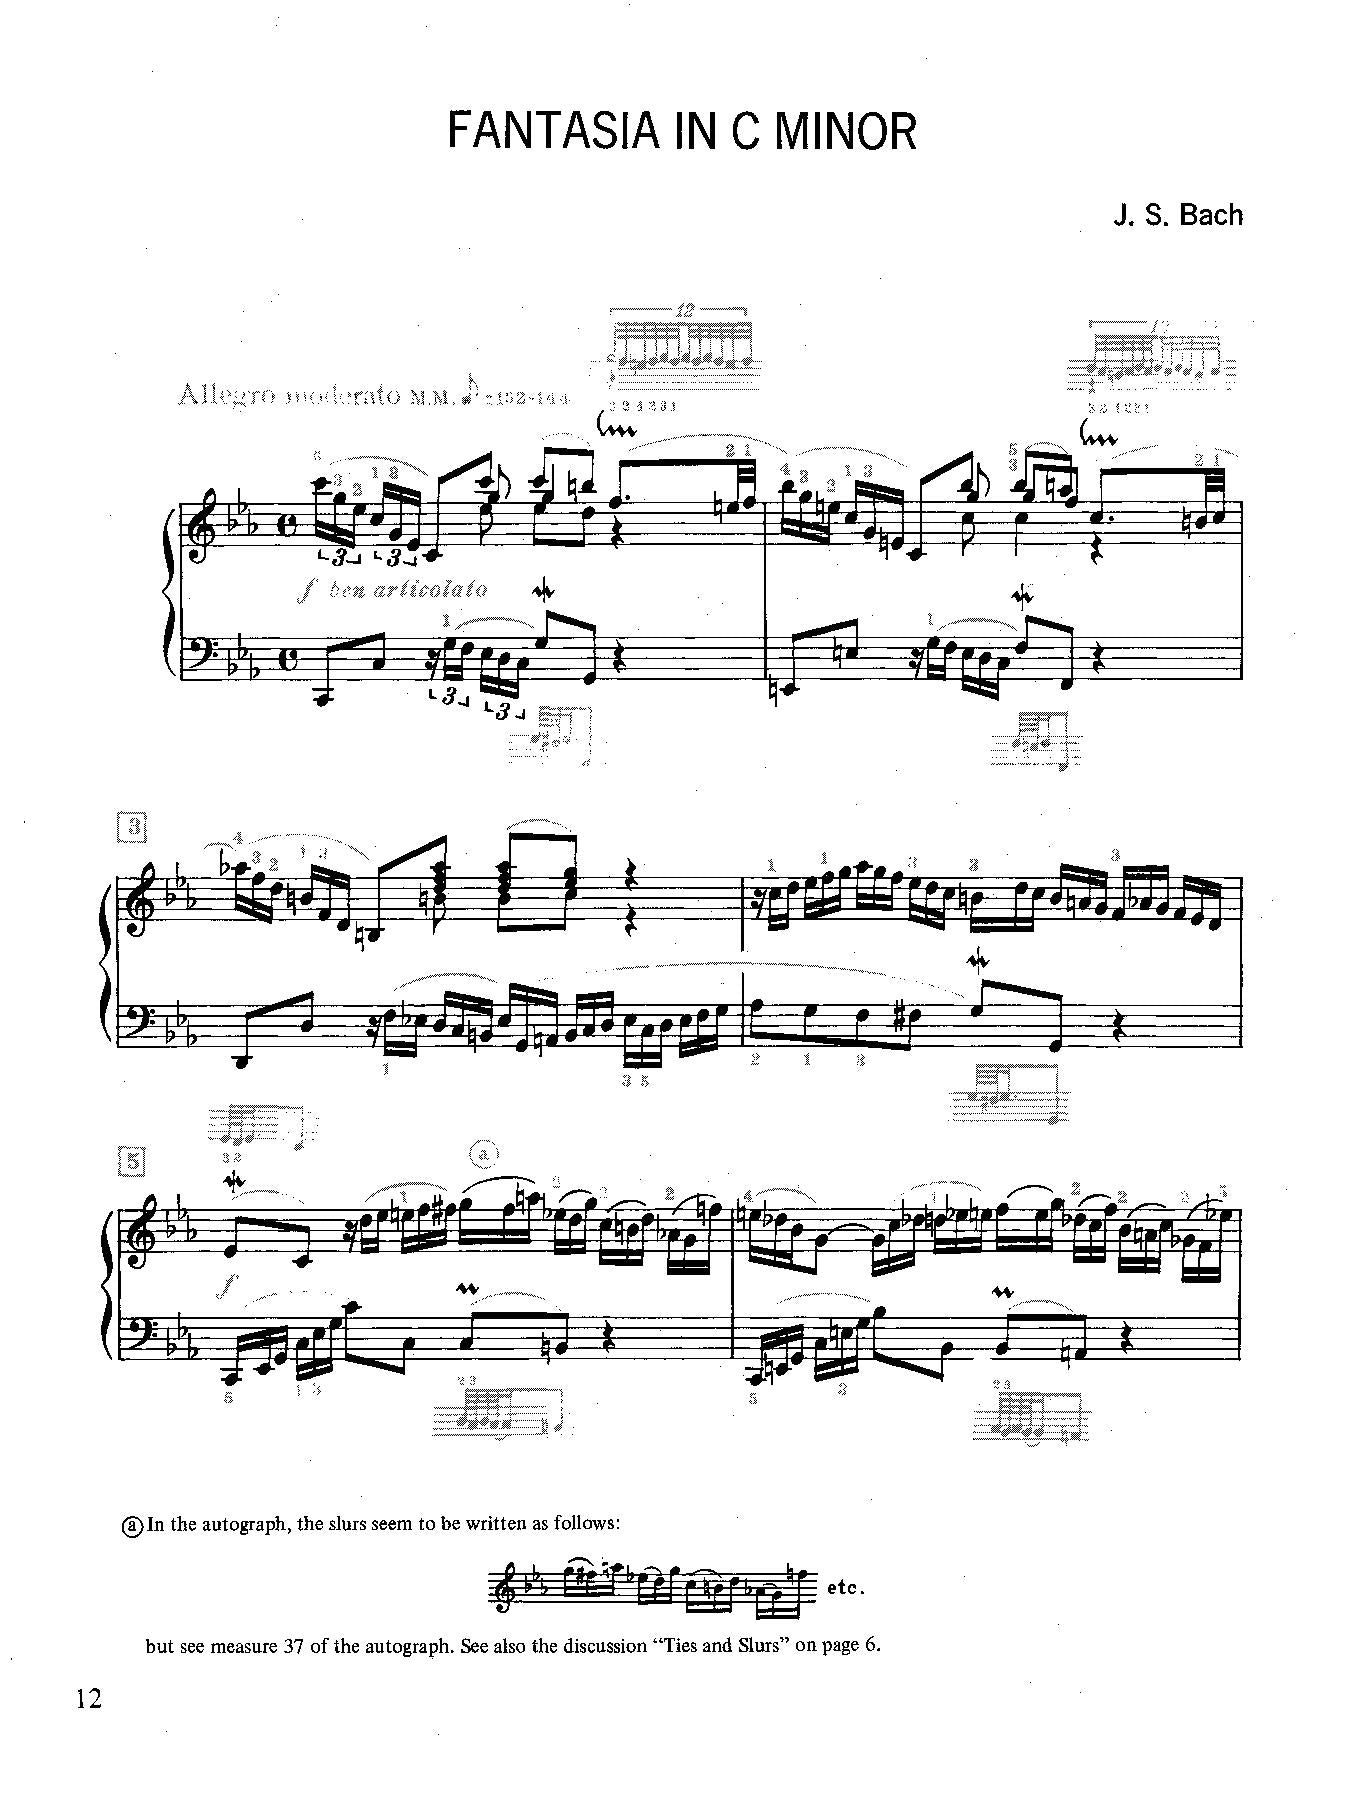 J. S. Bach: Fantasia in C Minor